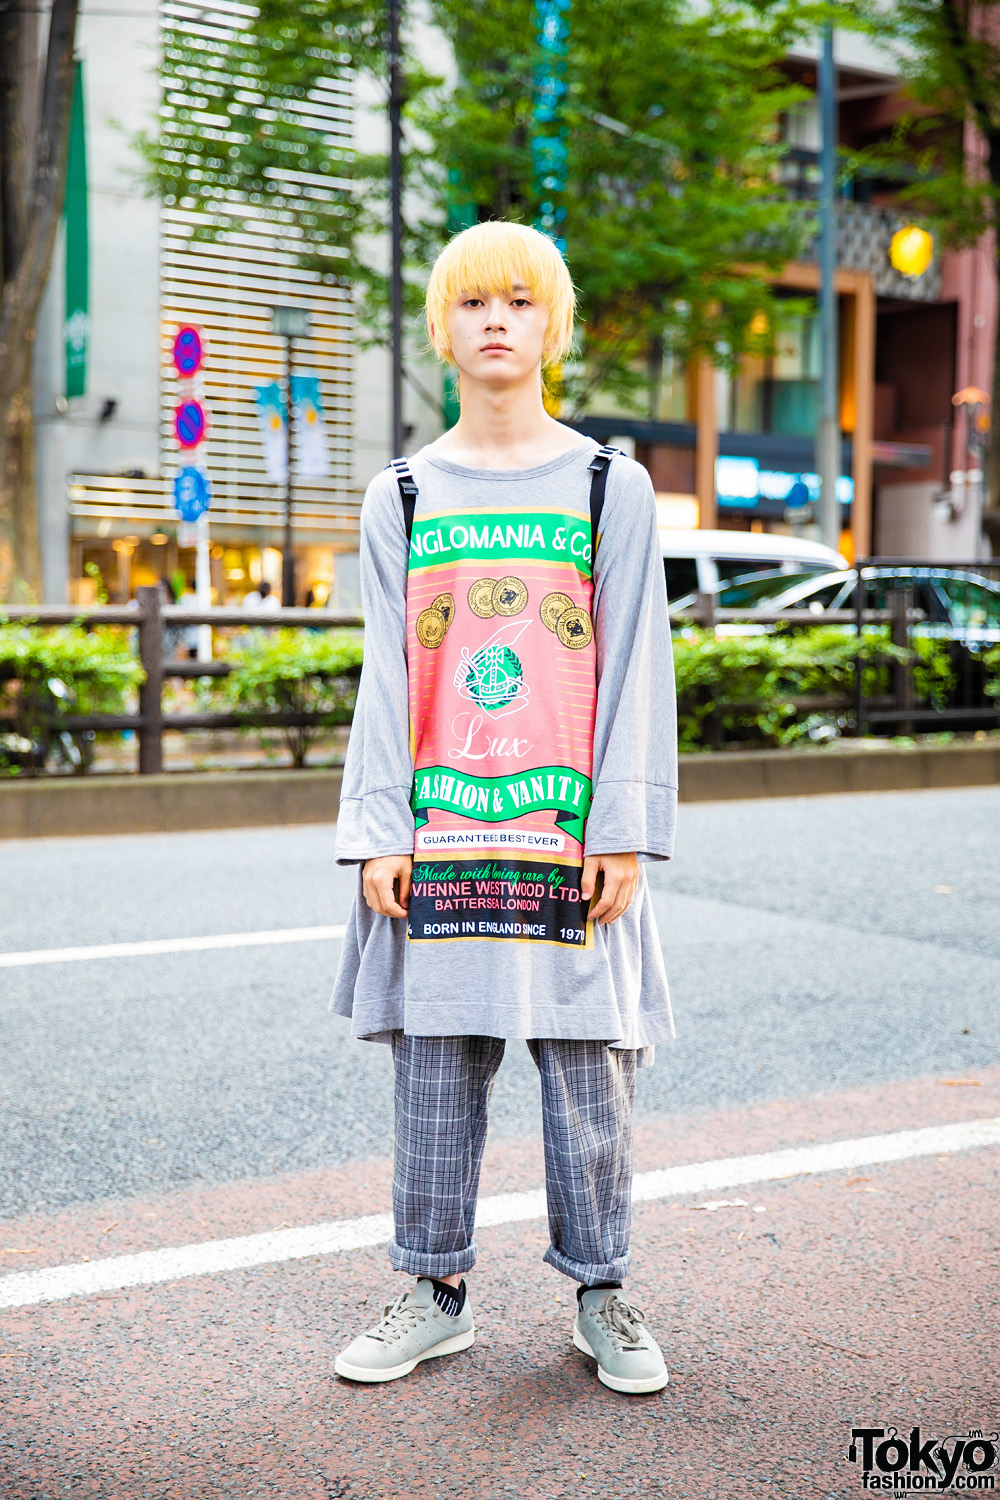 Harajuku Guy in Tokyo Vintage Streetwear w/ Blond Hair, Vivienne Westwood Top, Plaid Pants & Prada Backpack